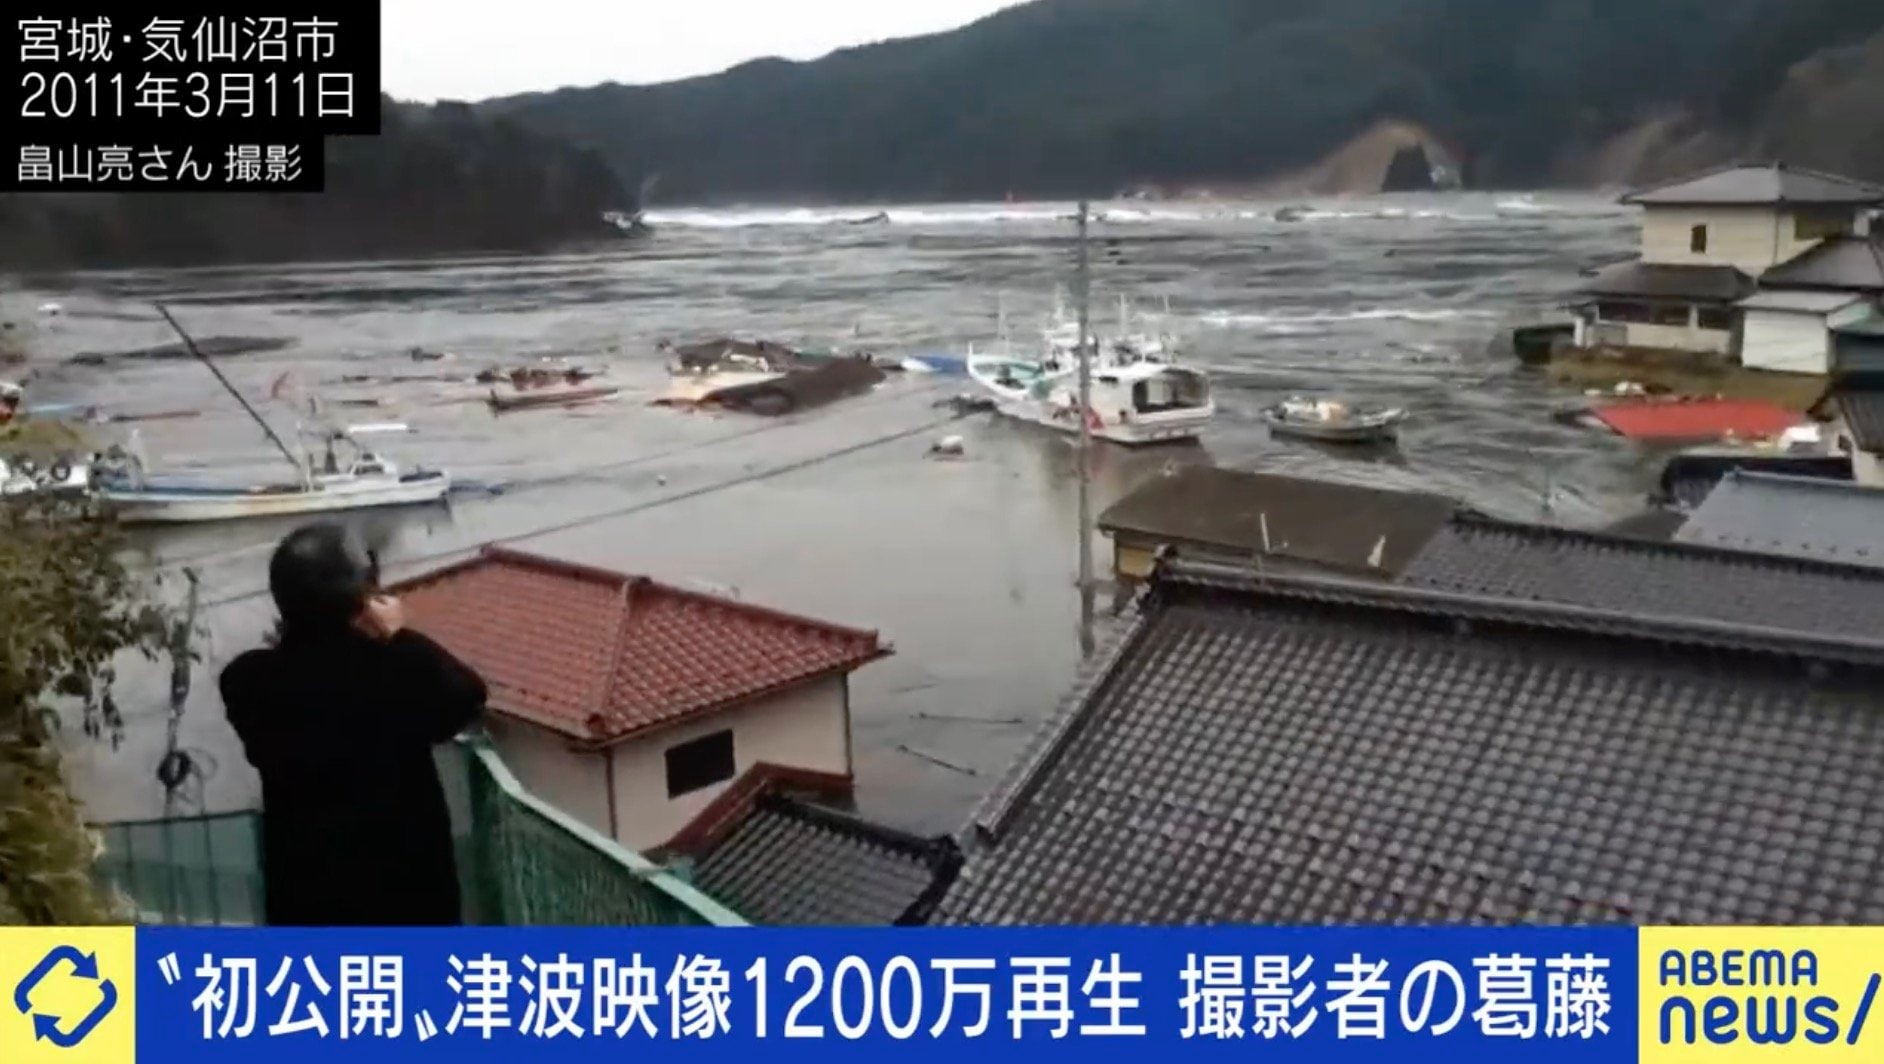 テレビ局は津波や遺体の映像を流さぬ理由を議論し続けているのか 東日本大震災をめぐる報道現場の課題 知り続ける 国内 Abema Times